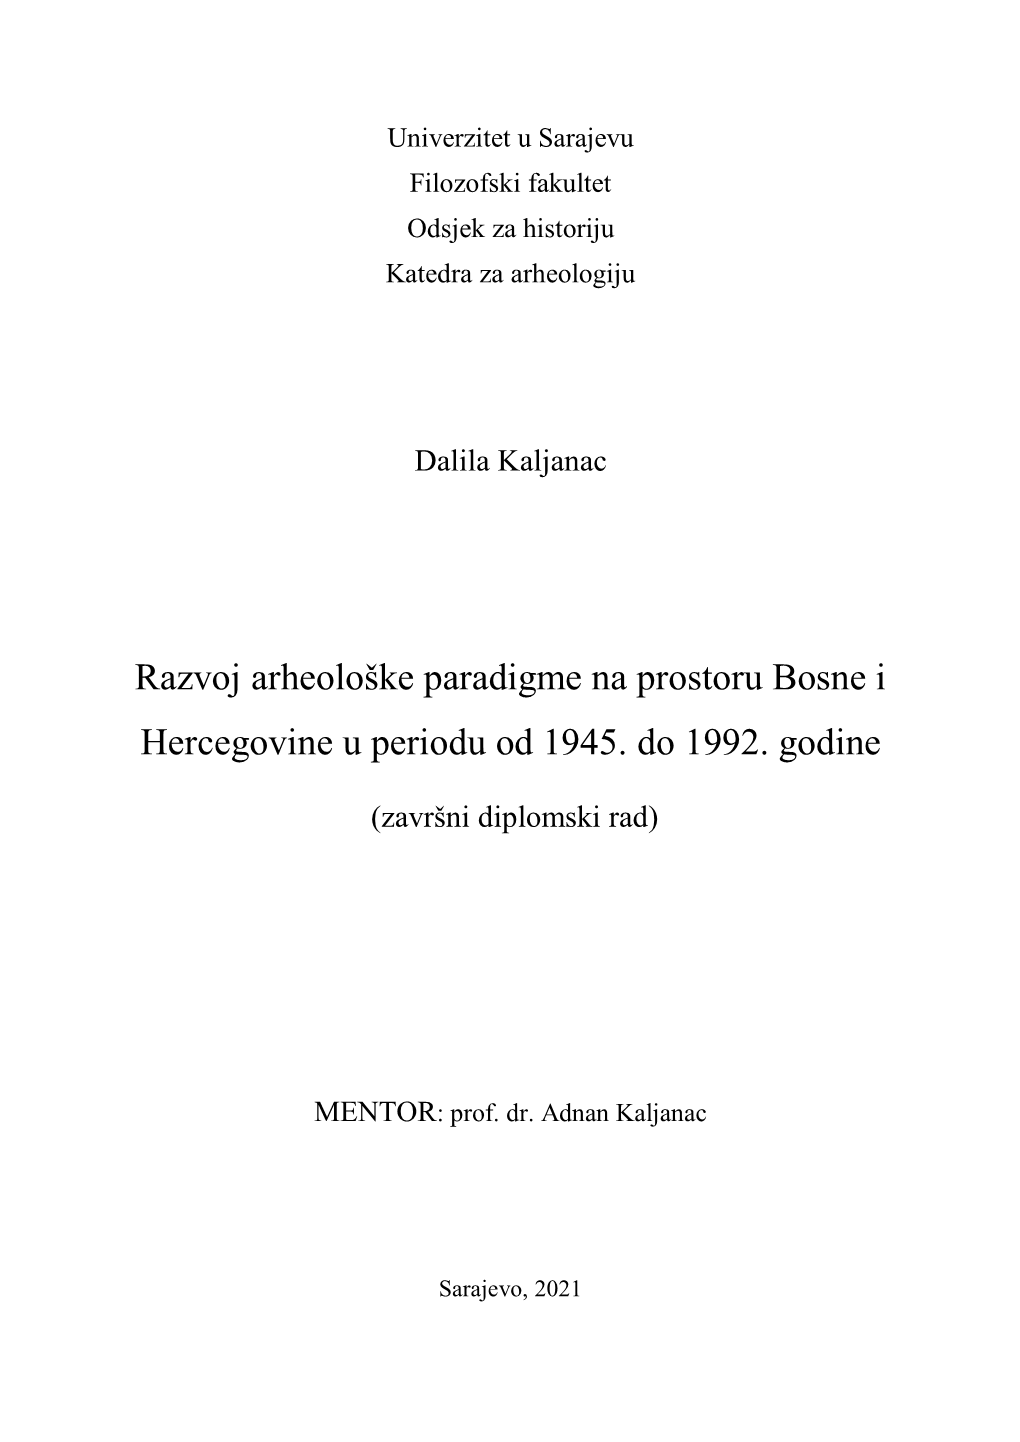 Razvoj Arheološke Paradigme Na Prostoru Bosne I Hercegovine U Periodu Od 1945